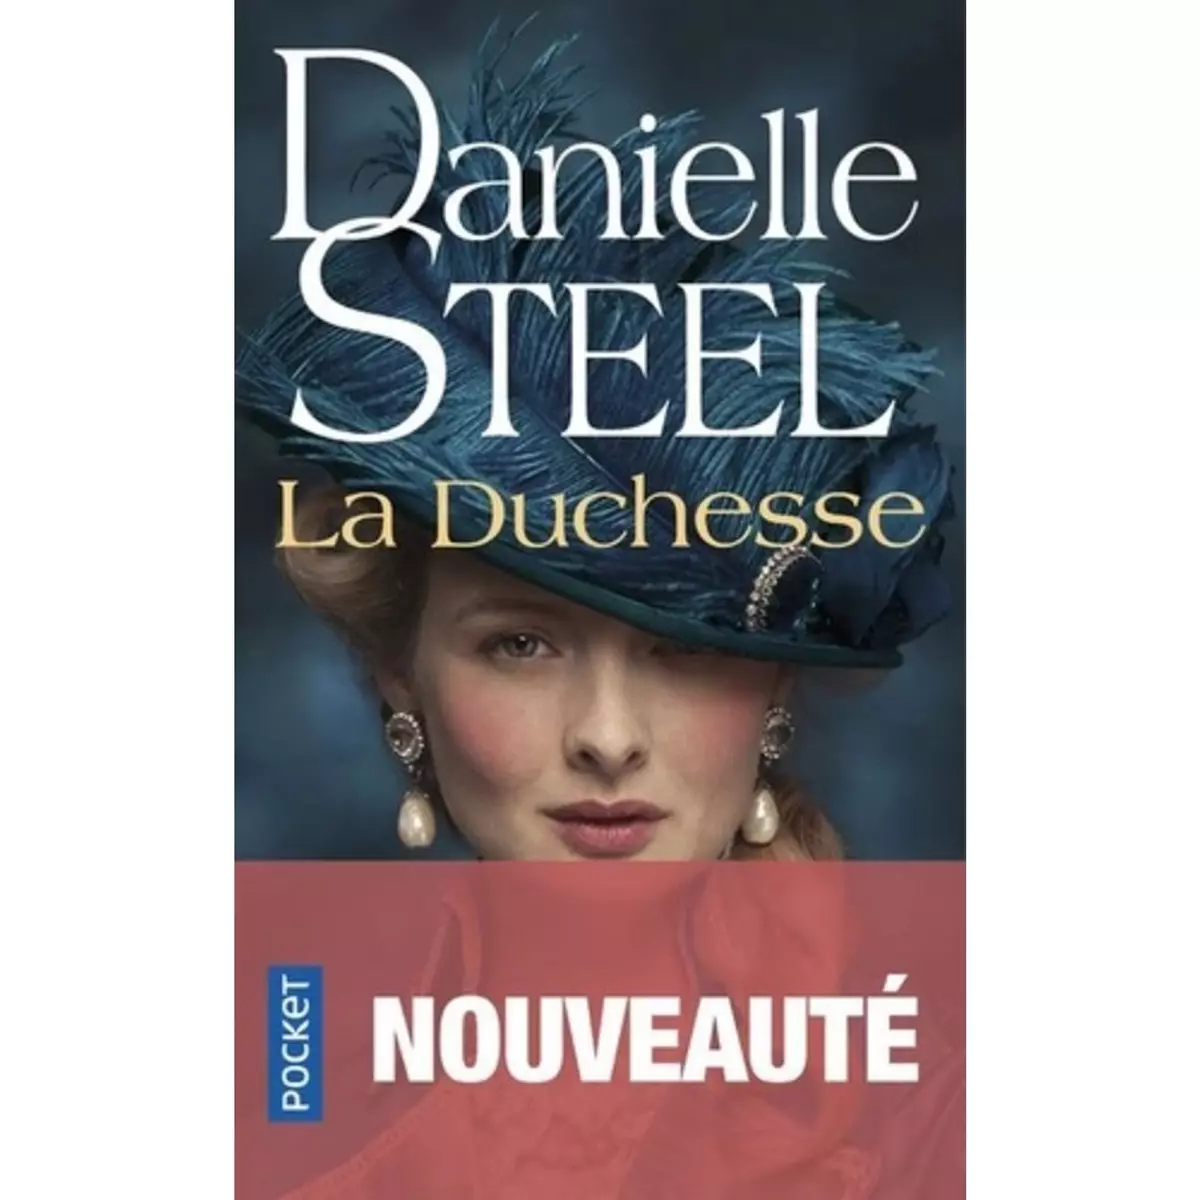  LA DUCHESSE, Steel Danielle